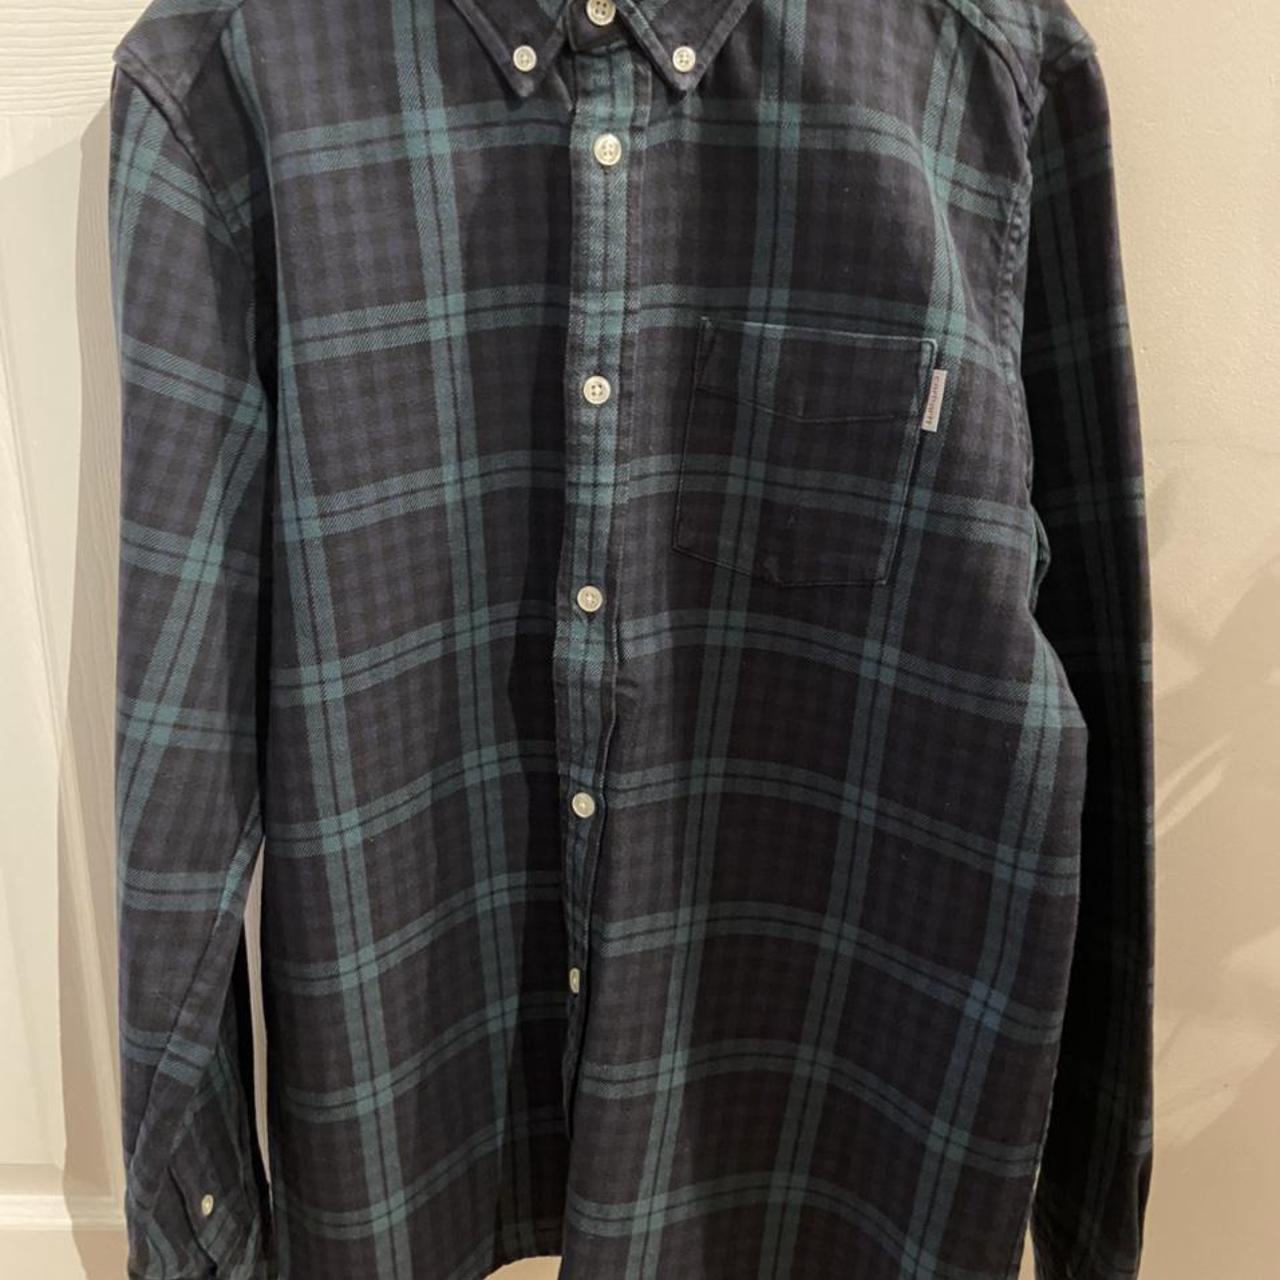 Carhartt Flannel Check Shirt - Size Medium - Regular... - Depop